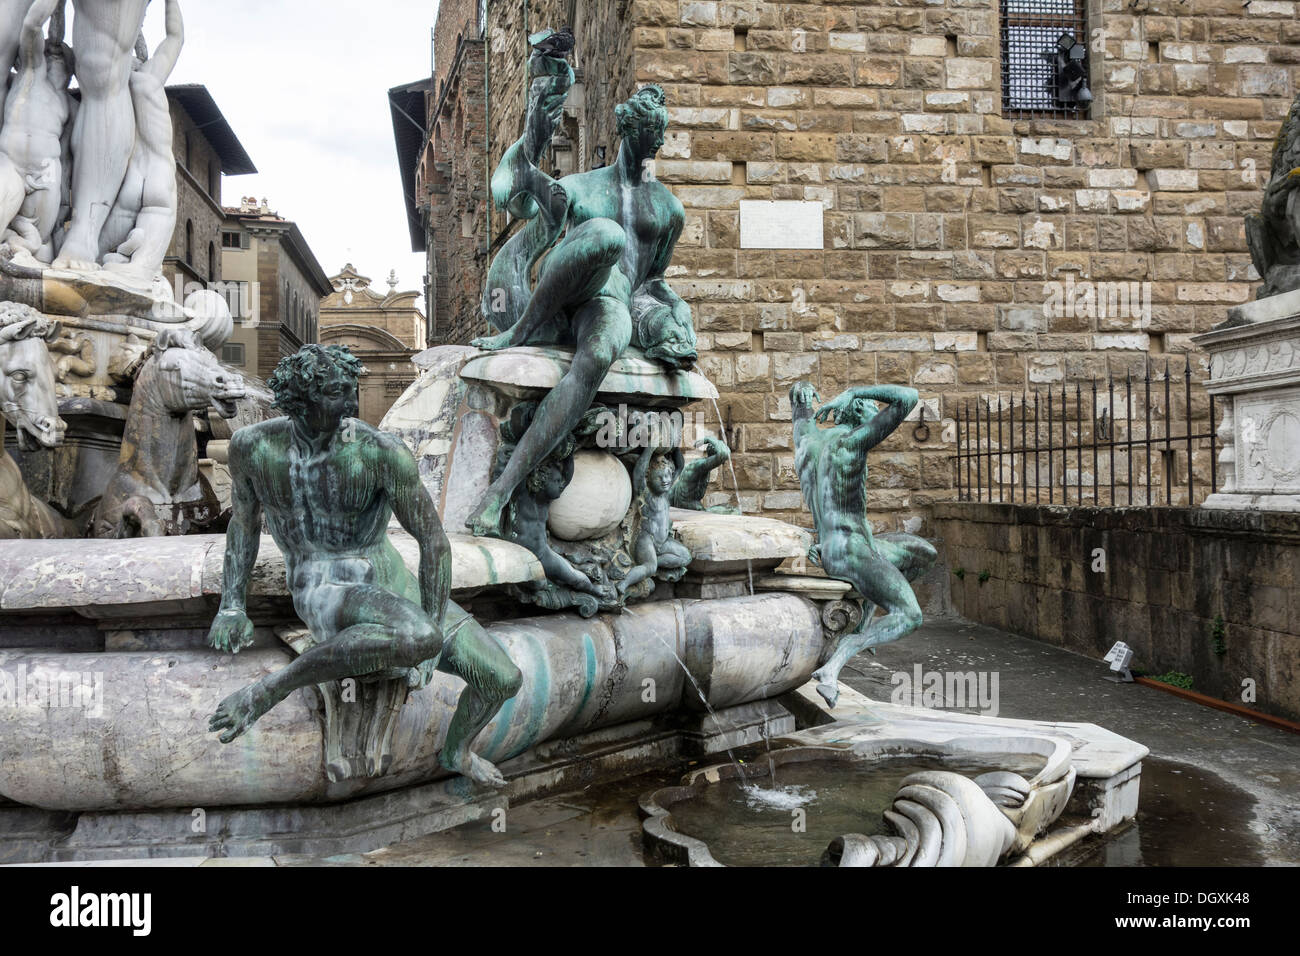 Fountain of Neptune on Piazza della Signoria in Florence, Italy Stock Photo